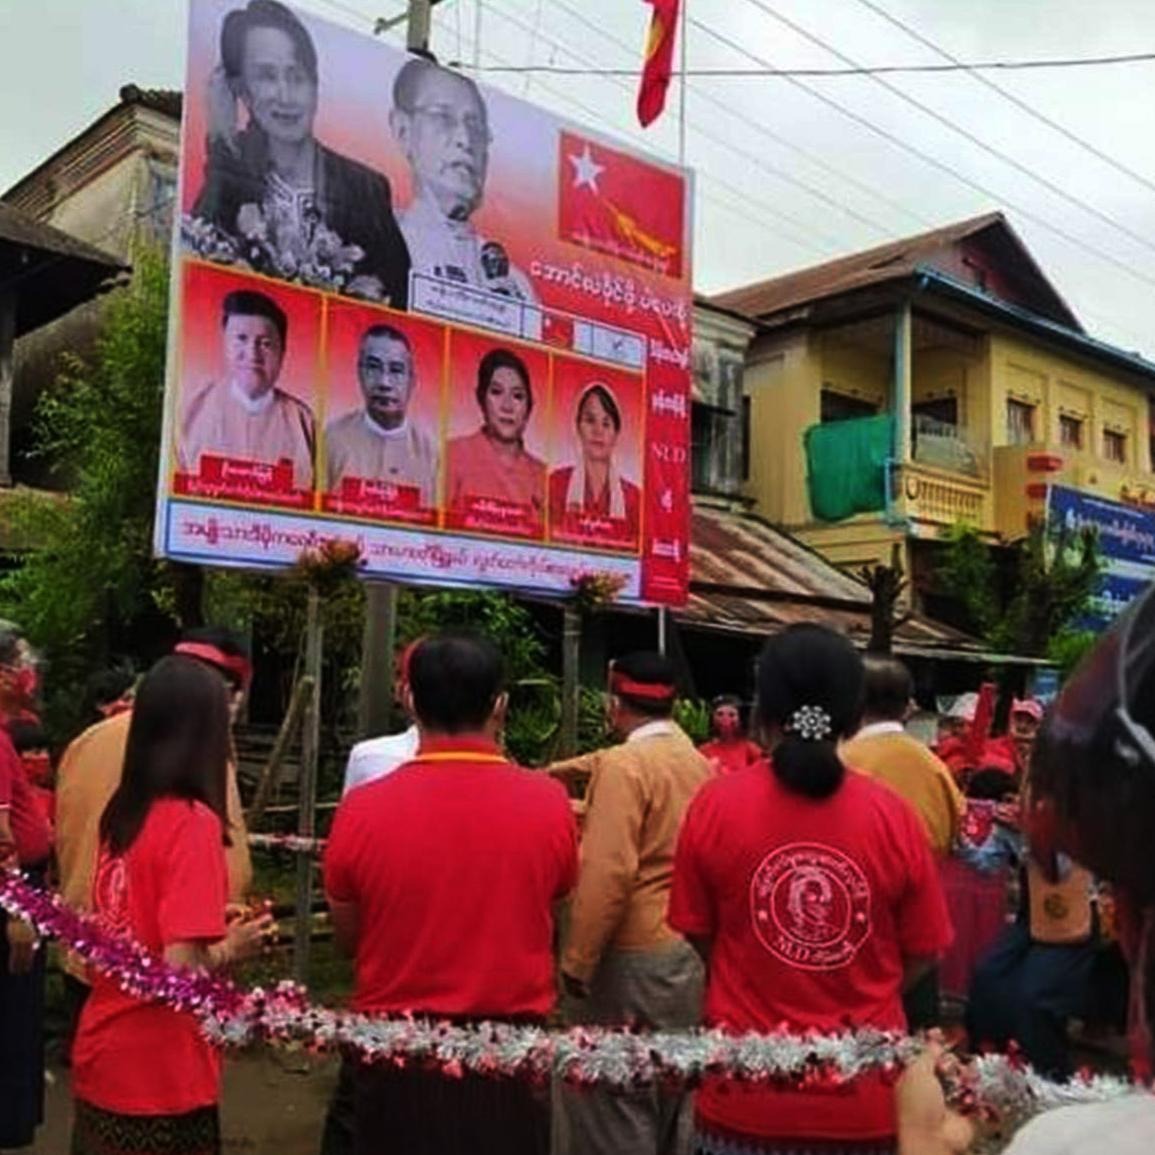 သာယာဝတီမြို့ NLD ပါတီရုံးကို စစ်အုပ်စုက ဝင်ရောက်ဖျက်စီး